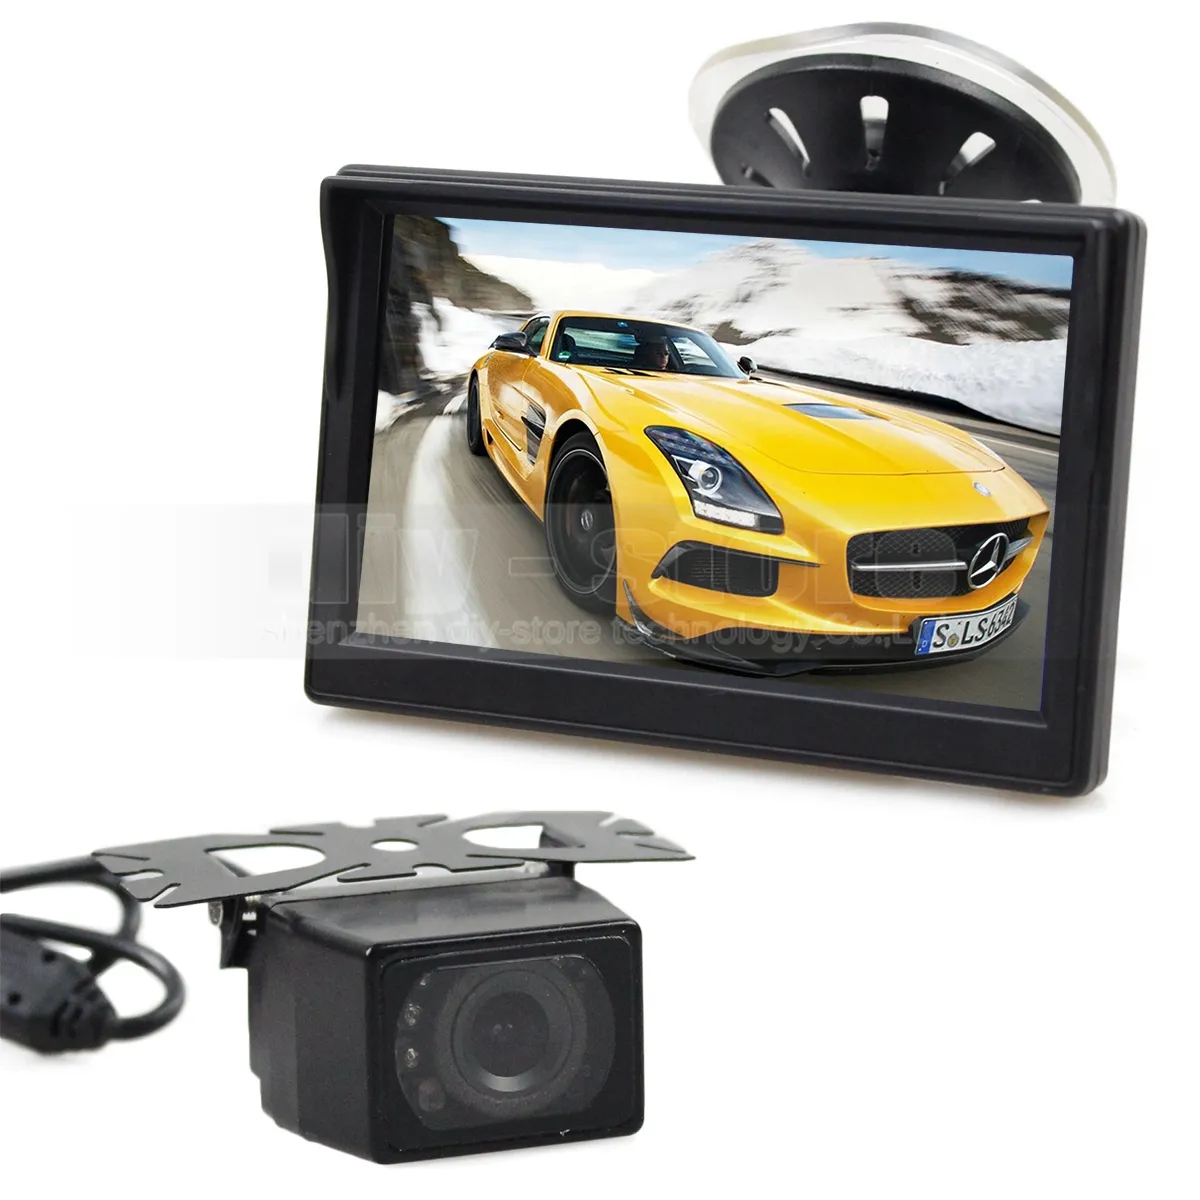 5 인치 LCD 디스플레이 후면보기 모니터 자동차 모니터 + IR 야간 시계 백업 HD 자동차 카메라 + 무료 5 미터 비디오 케이블